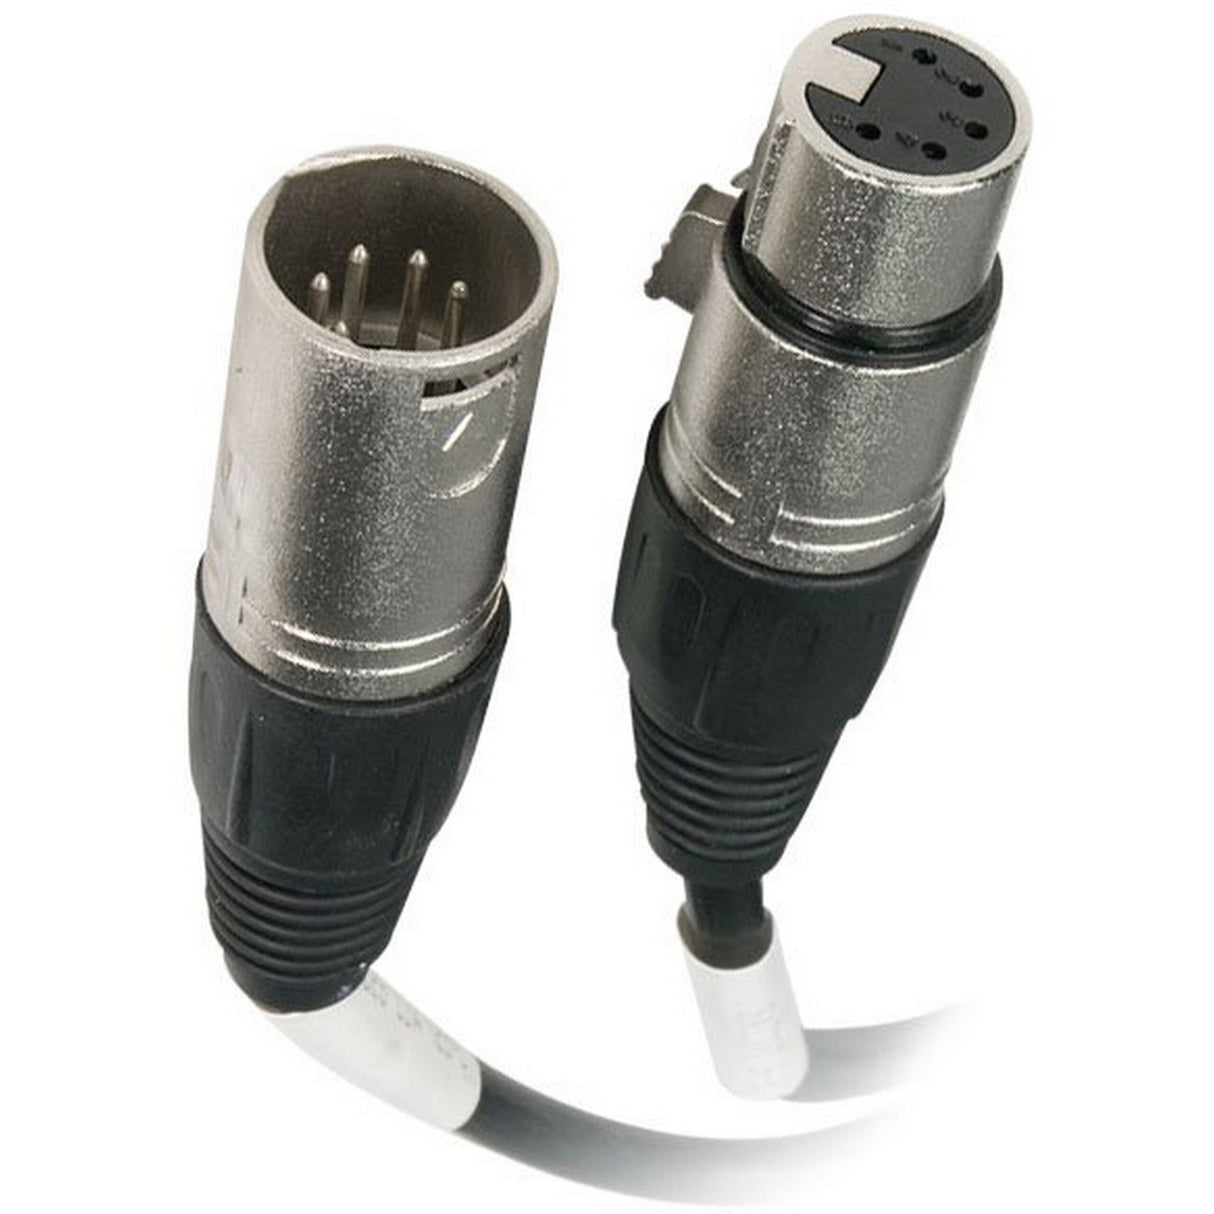 Chauvet DMX5P10FT 5-Pin DMX Cable, 10 Foot